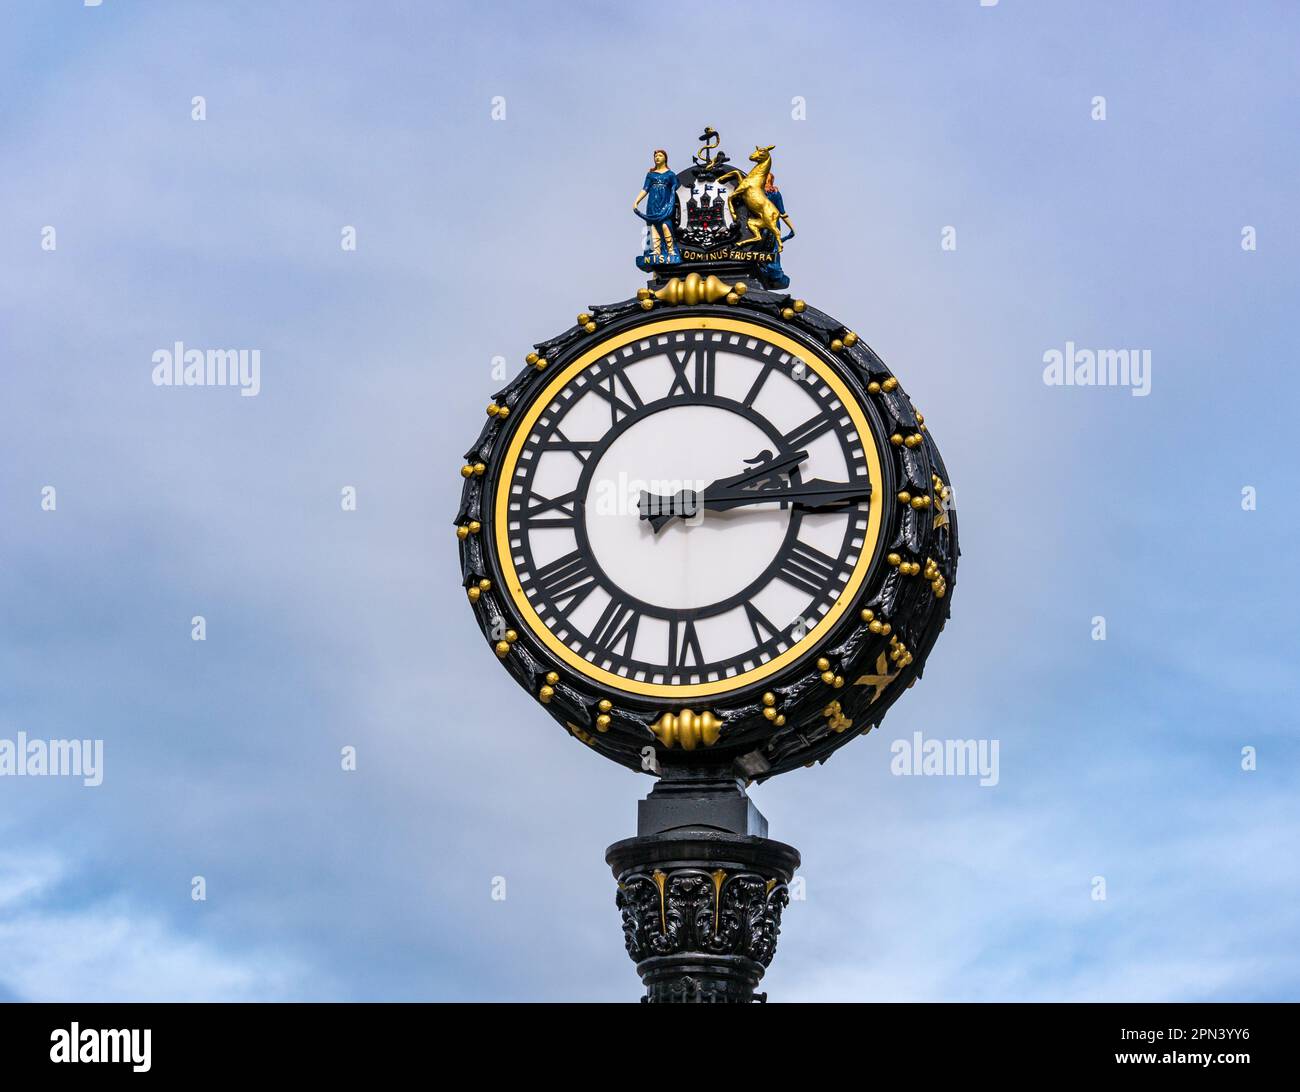 Nahaufnahme der kunstvoll verzierten viktorianischen Uhr an der Elm Row, Leith Walk, Edinburgh, Schottland, Großbritannien Stockfoto